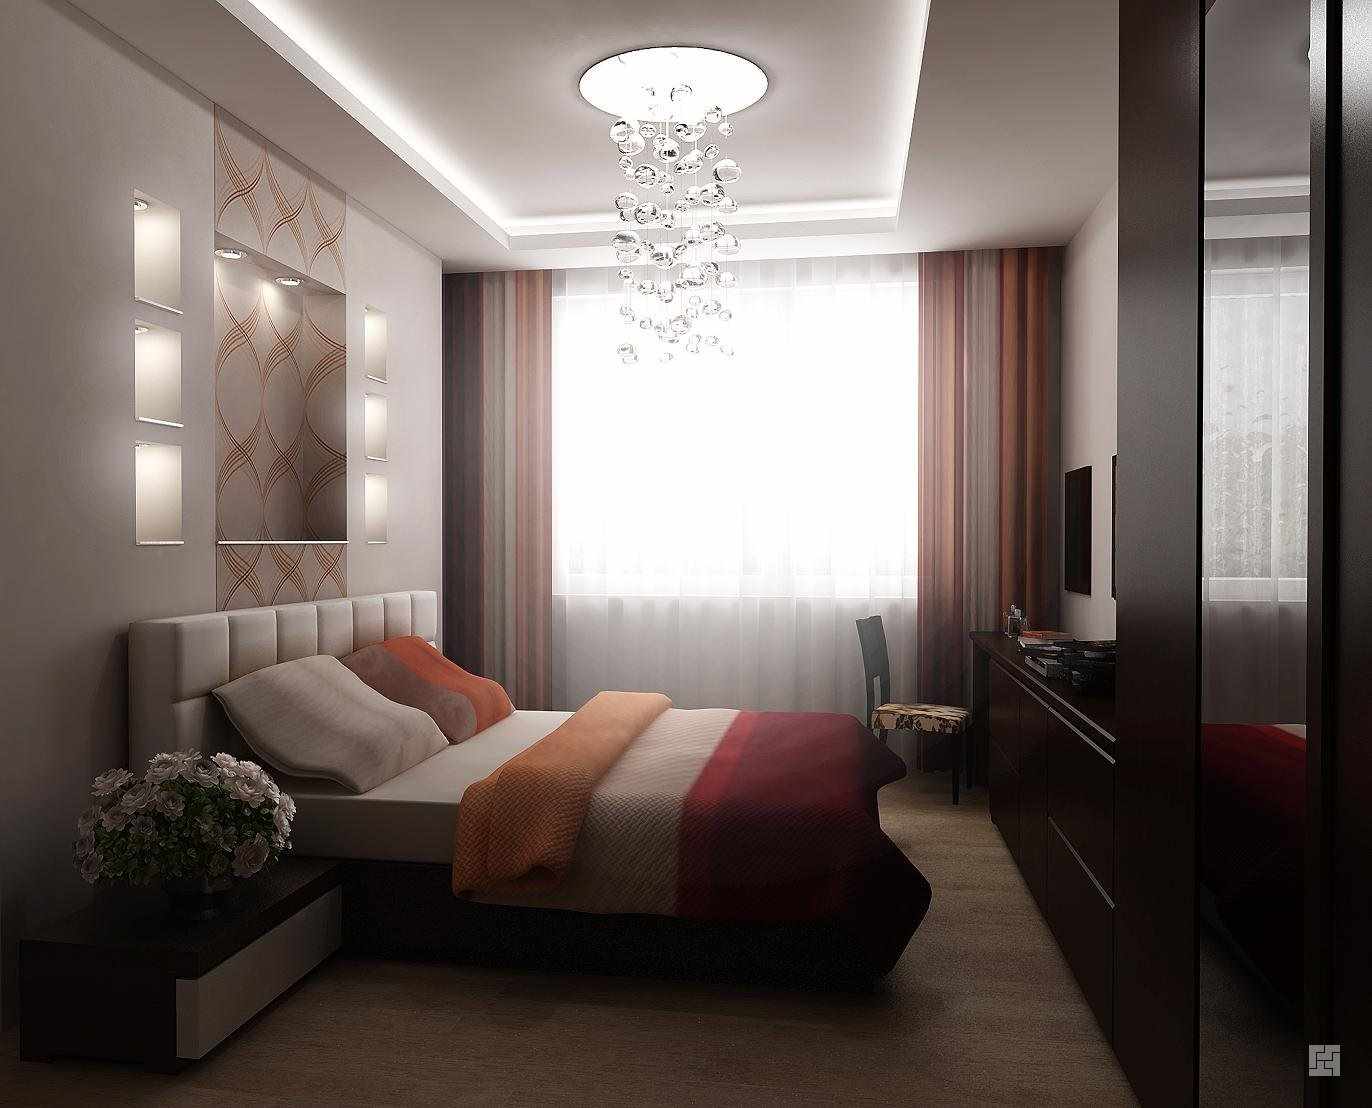 ตัวอย่างของรูปแบบแสงของห้องนอนแคบ ๆ